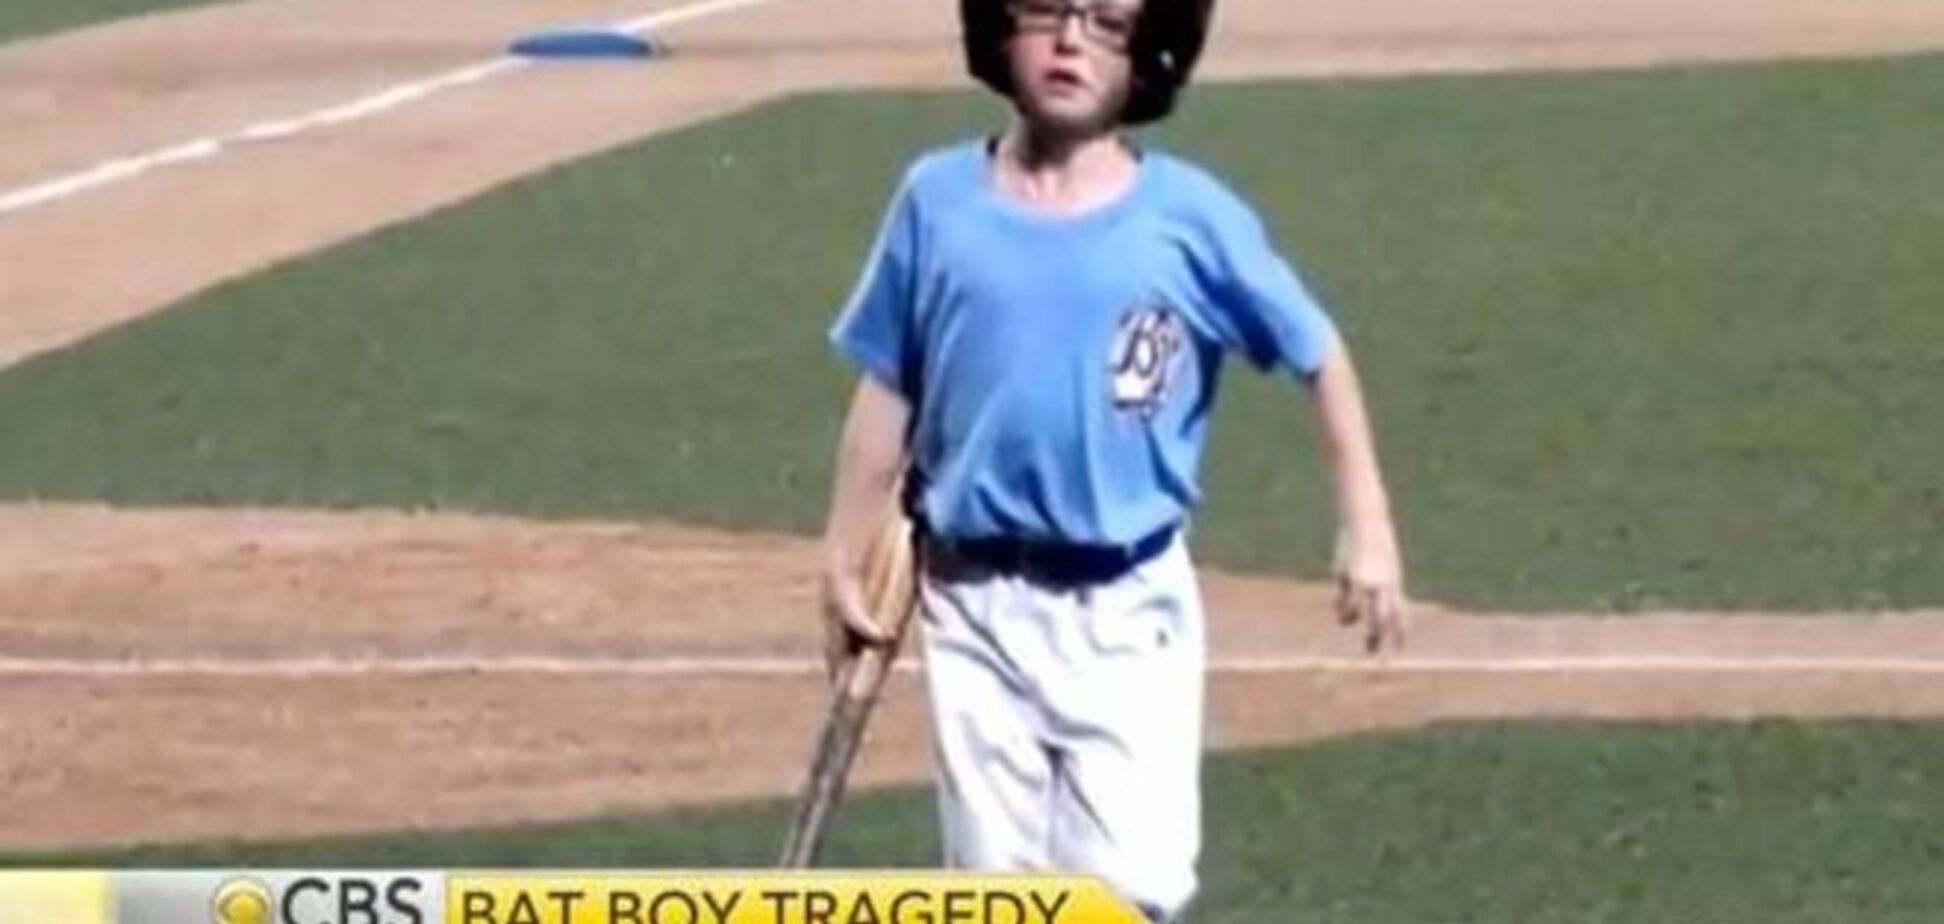 Опасный бейсбол: вылетевшая бита убила 9-летнего мальчика